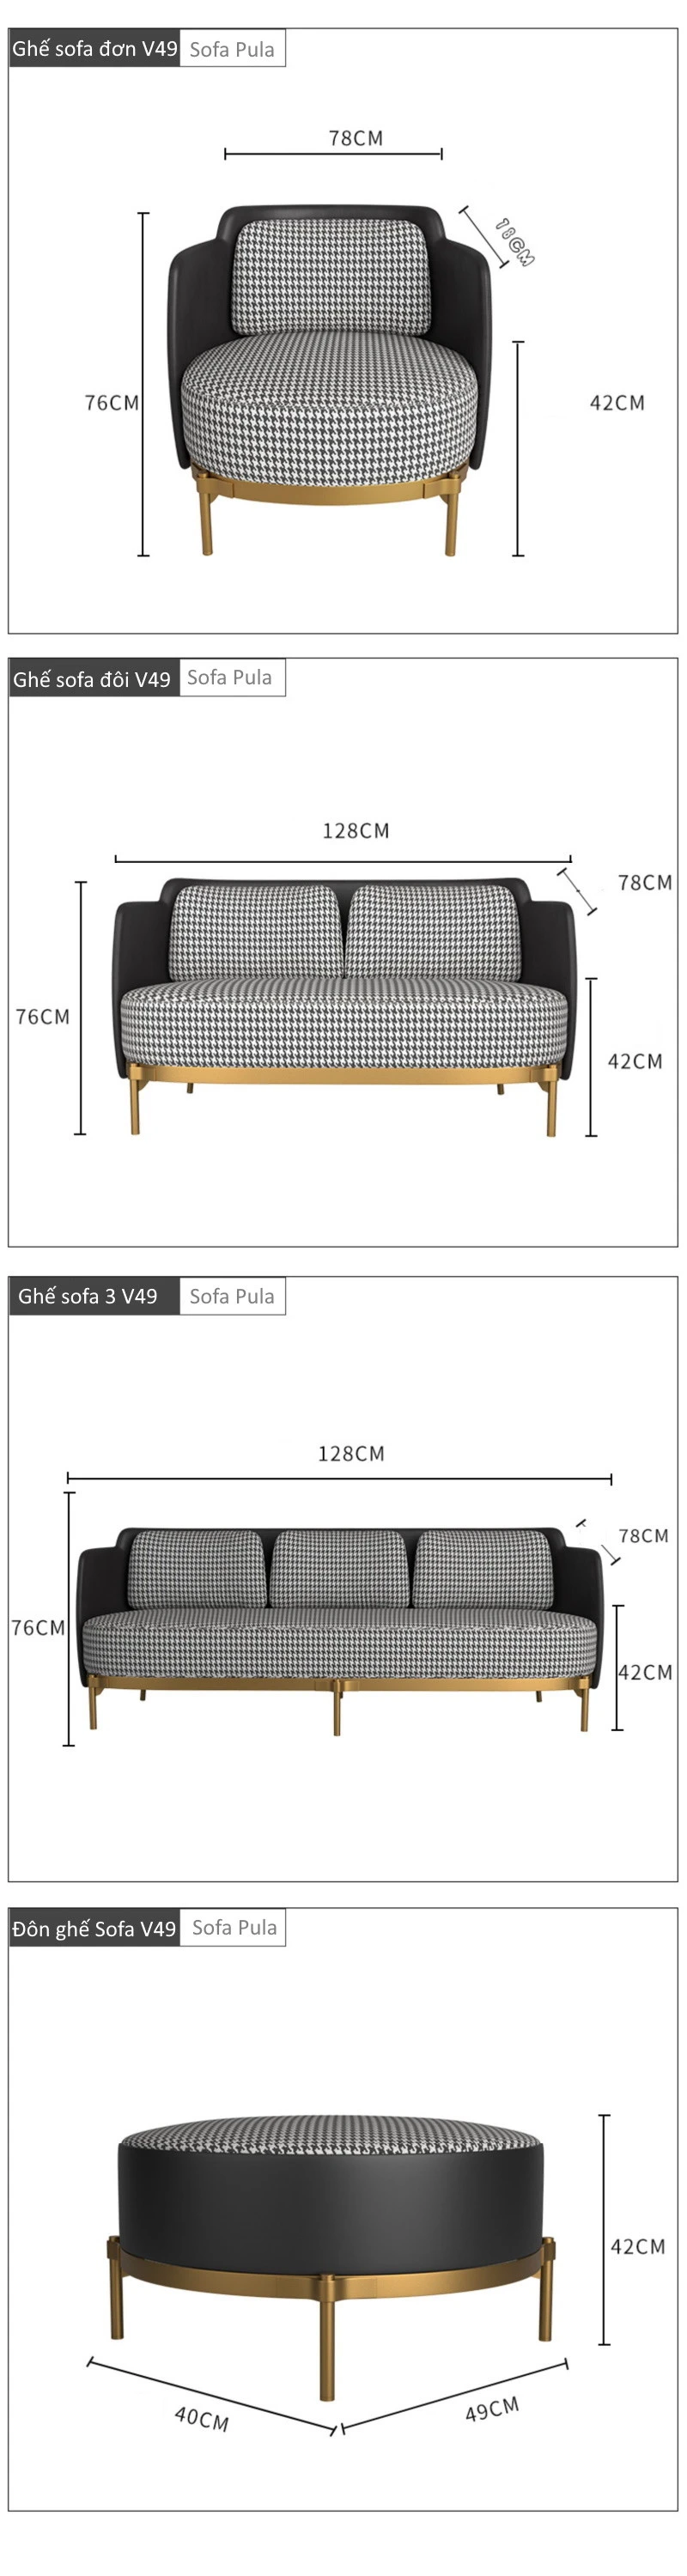 Ghế sofa văng viền da hiện đại V49